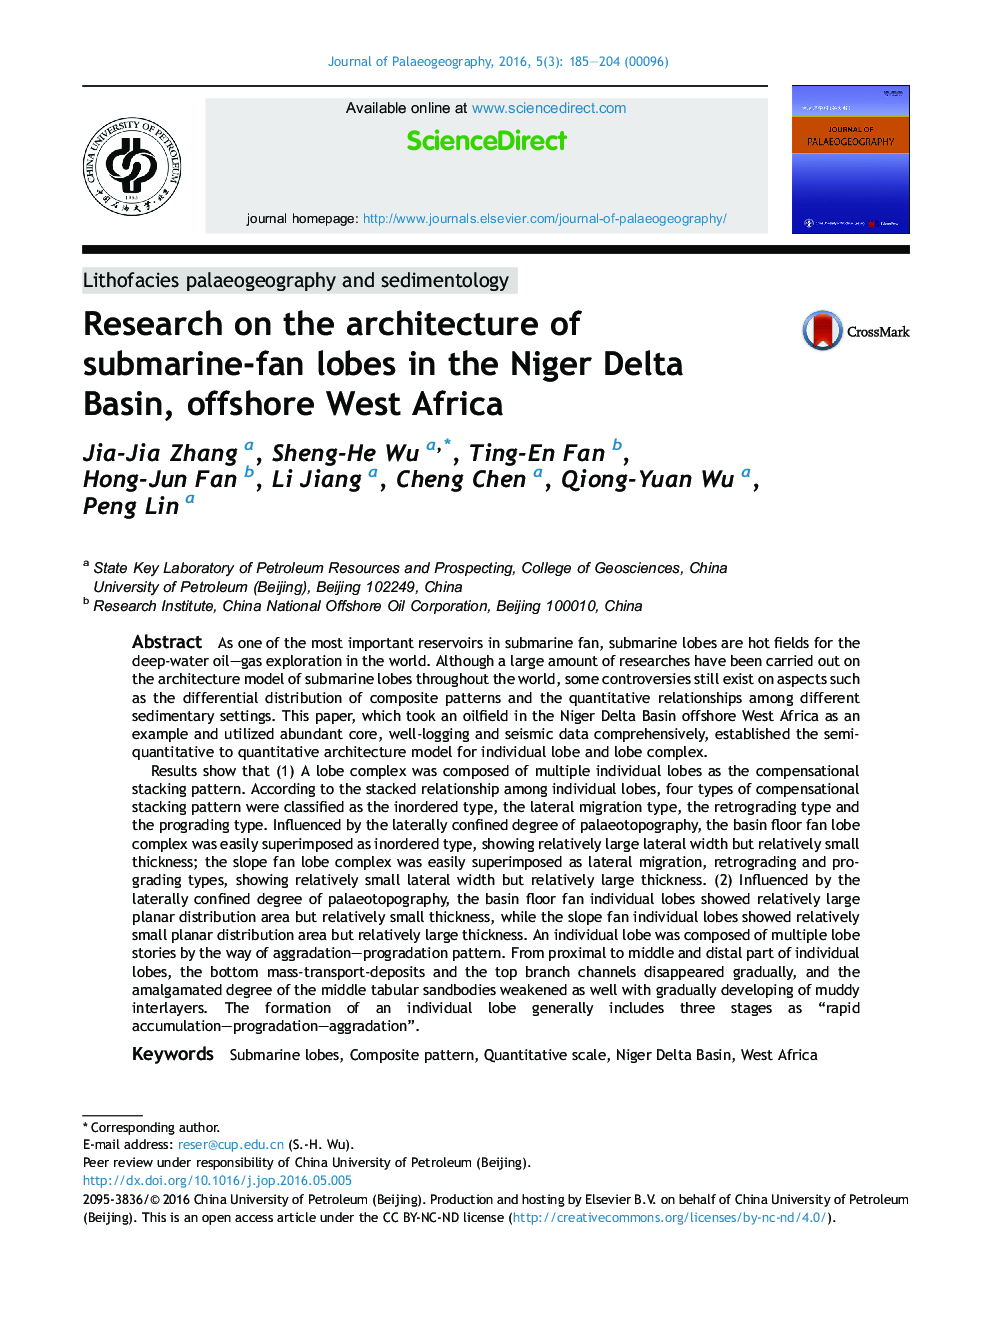 تحقیق در مورد معماری زیردریایی-فن شاخ در حوضه دلتای نیجر، دریای افریقای غربی 